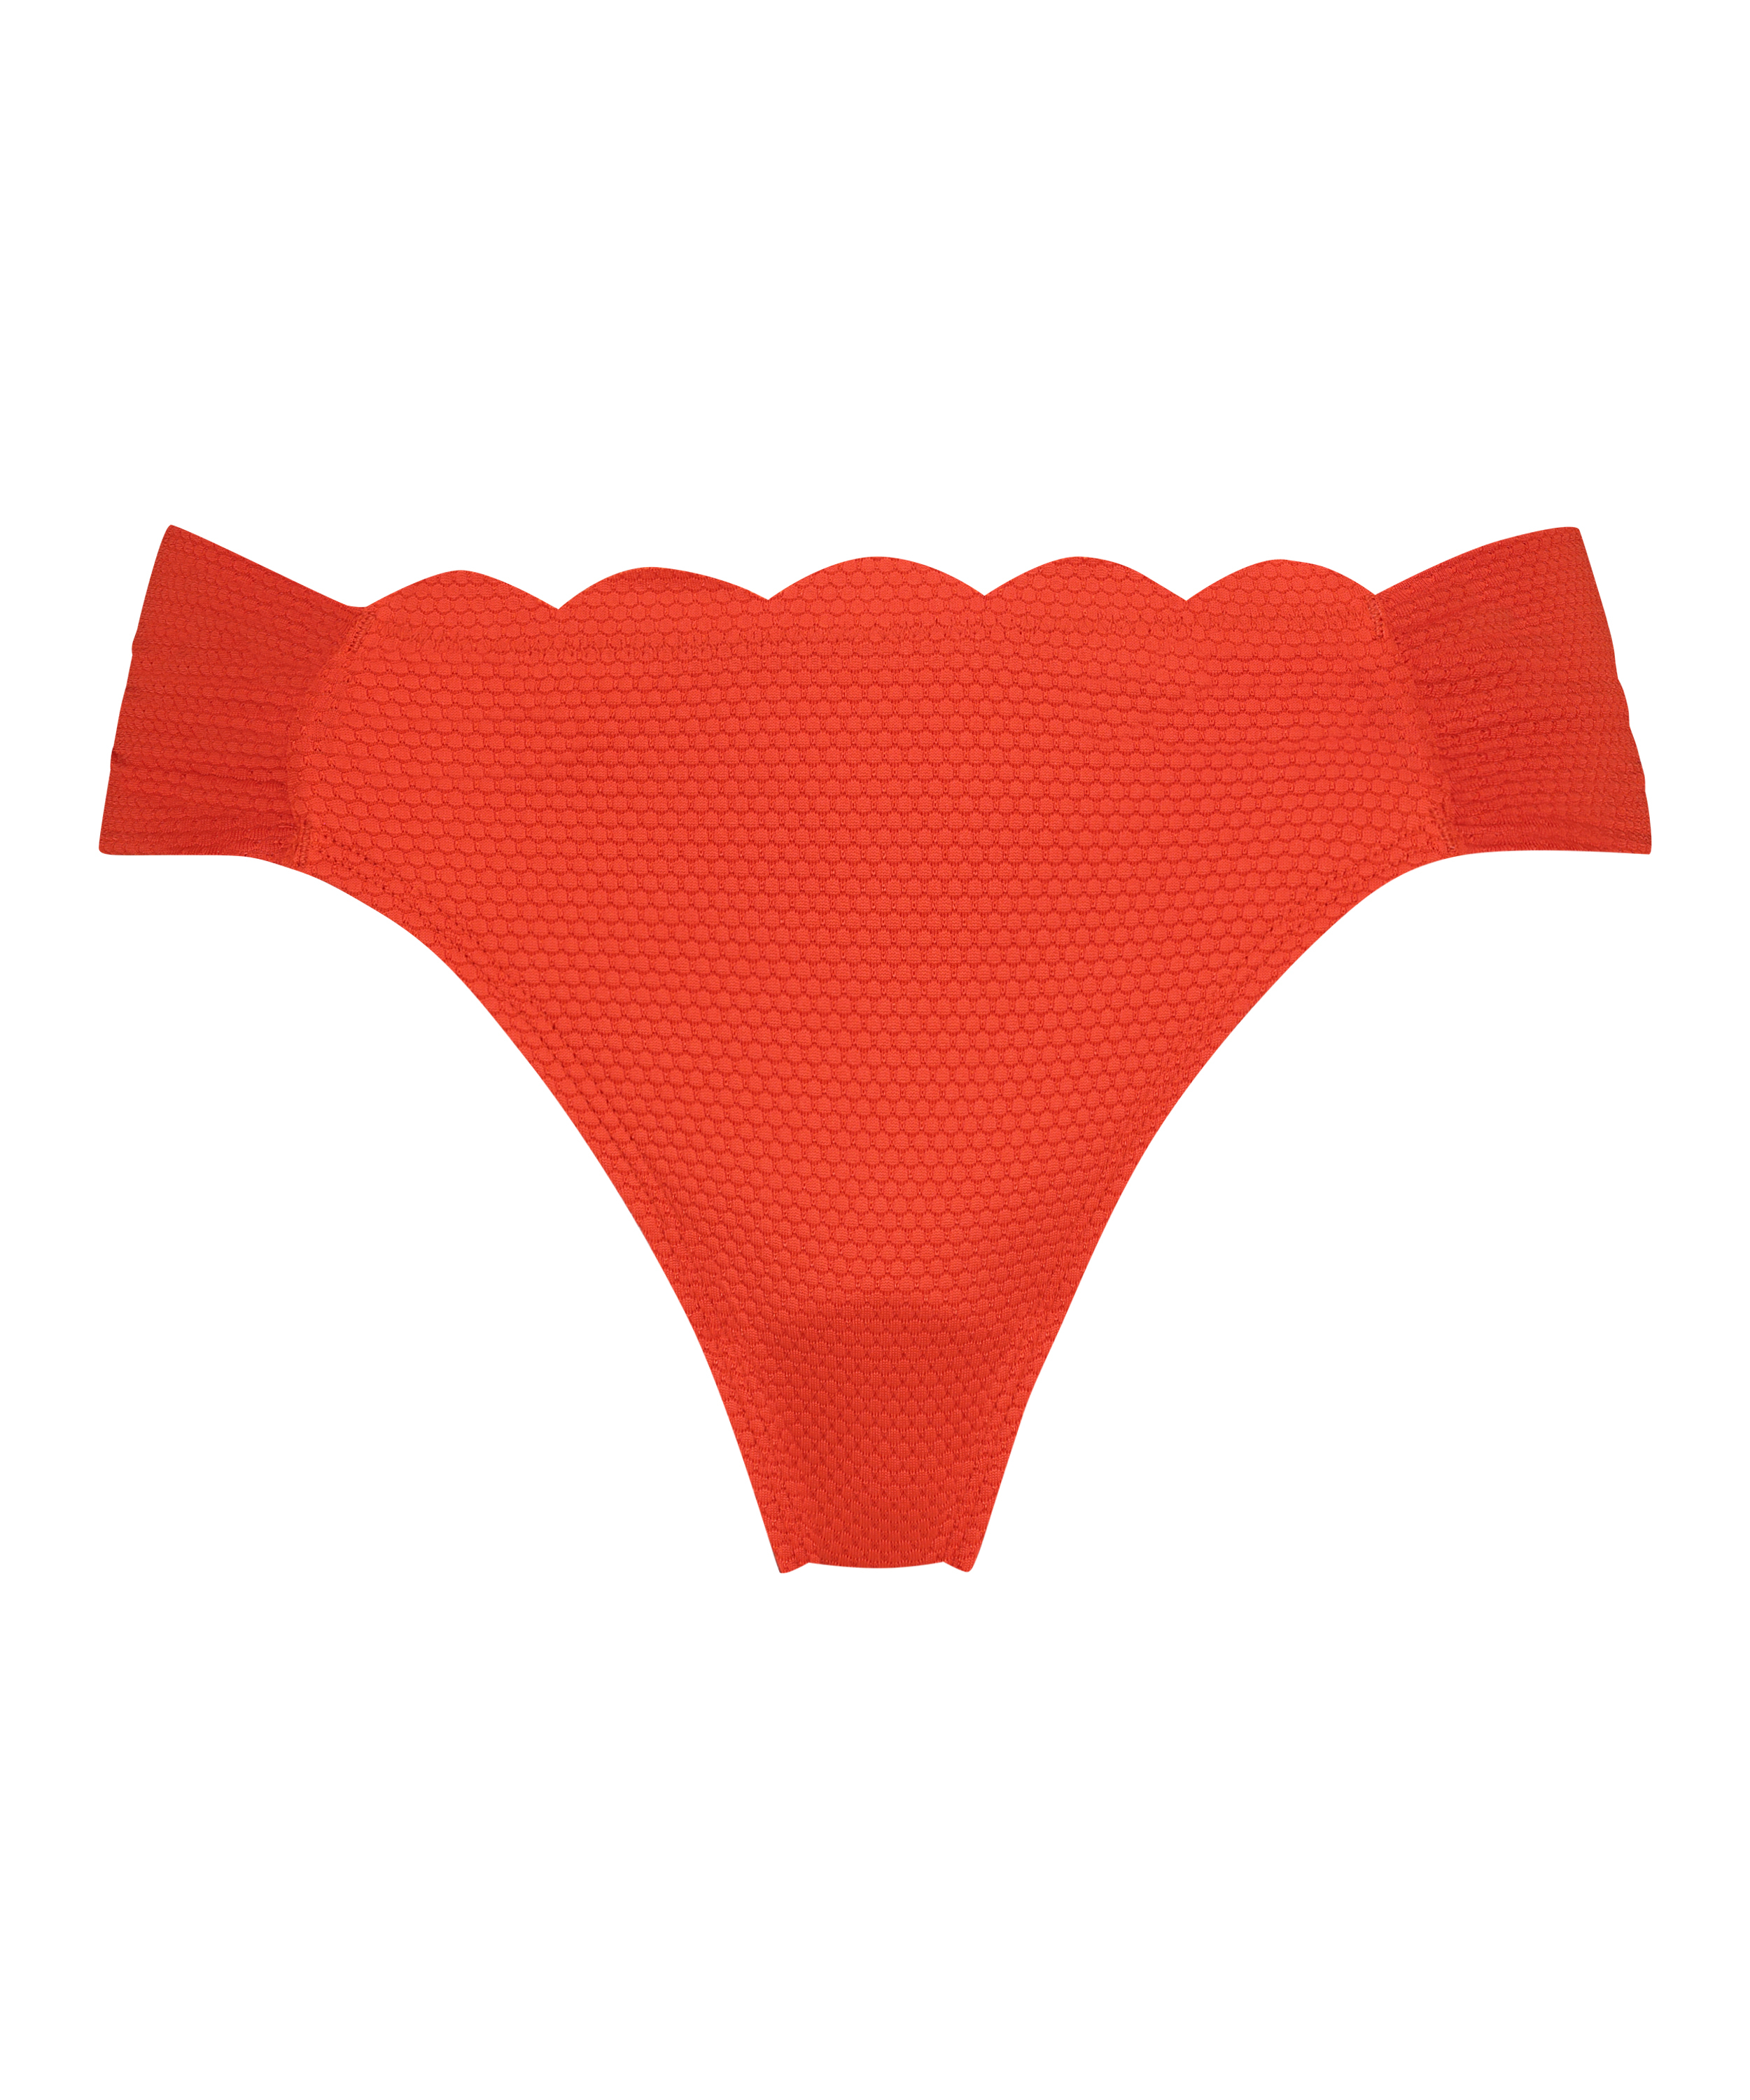 Bikini bottoms Rio Scallop, Red, main